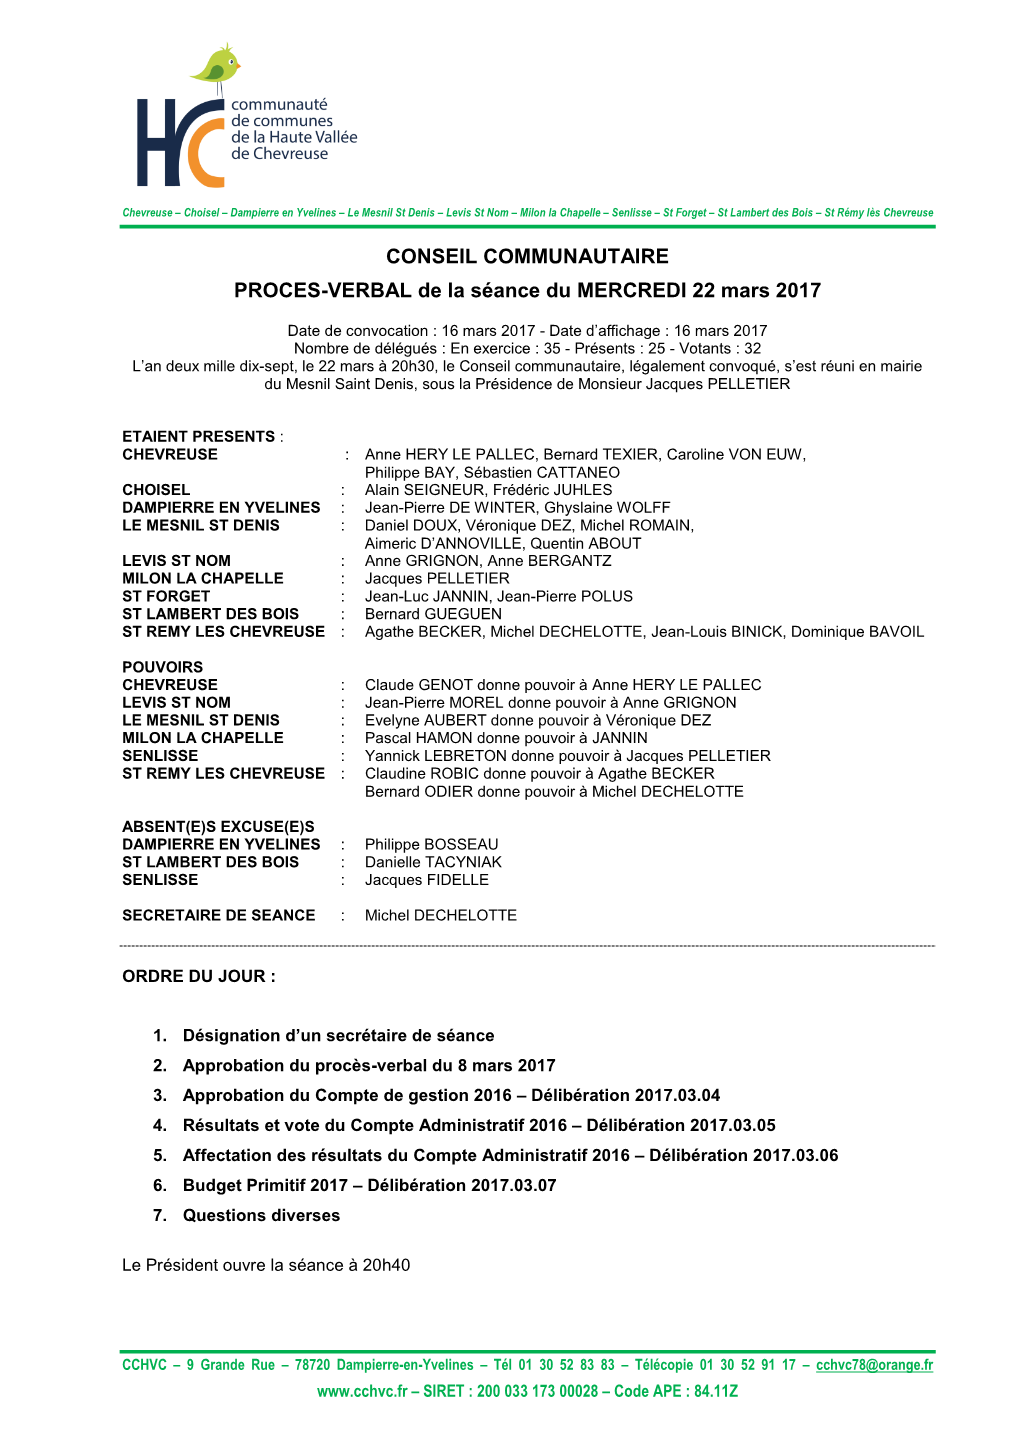 CONSEIL COMMUNAUTAIRE PROCES-VERBAL De La Séance Du MERCREDI 22 Mars 2017